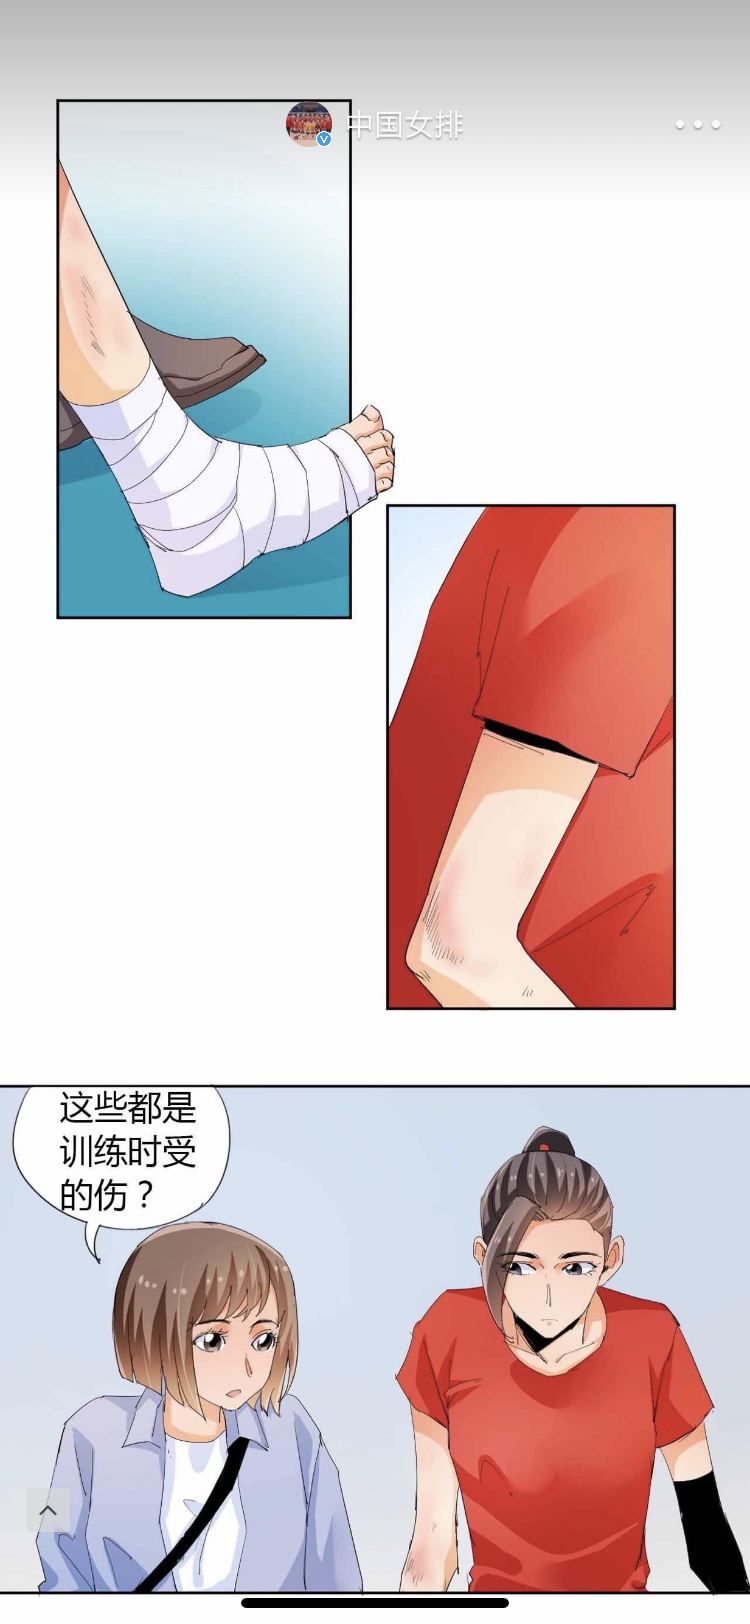 中国女排官方微博发表漫画系列特别关照江苏女排